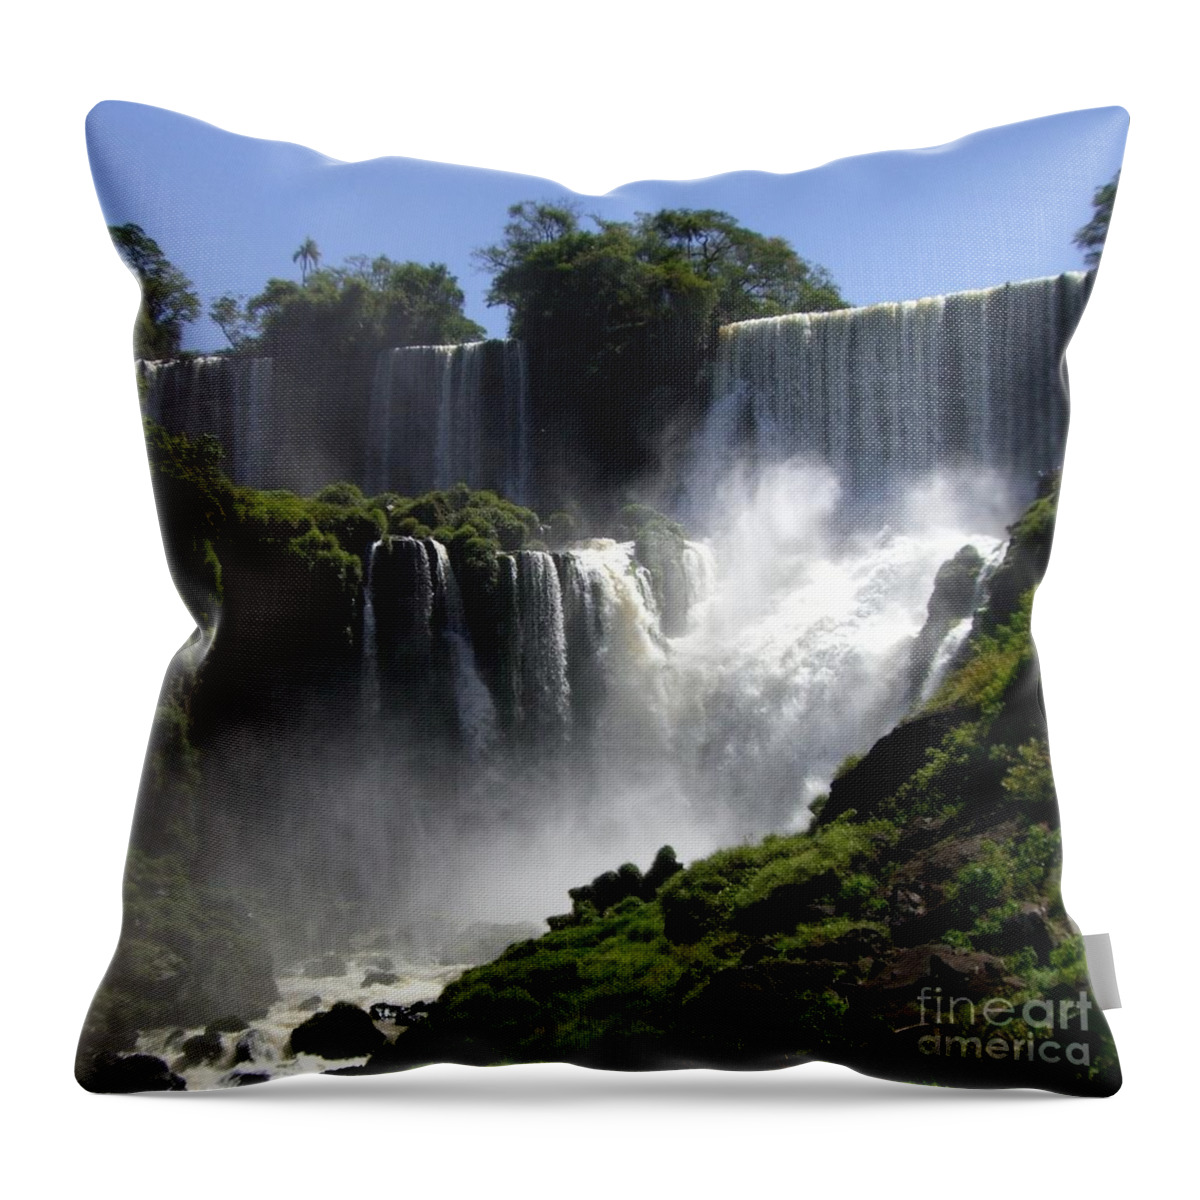 Waterfalls Throw Pillow featuring the photograph Iguassu Falls by Barbie Corbett-Newmin